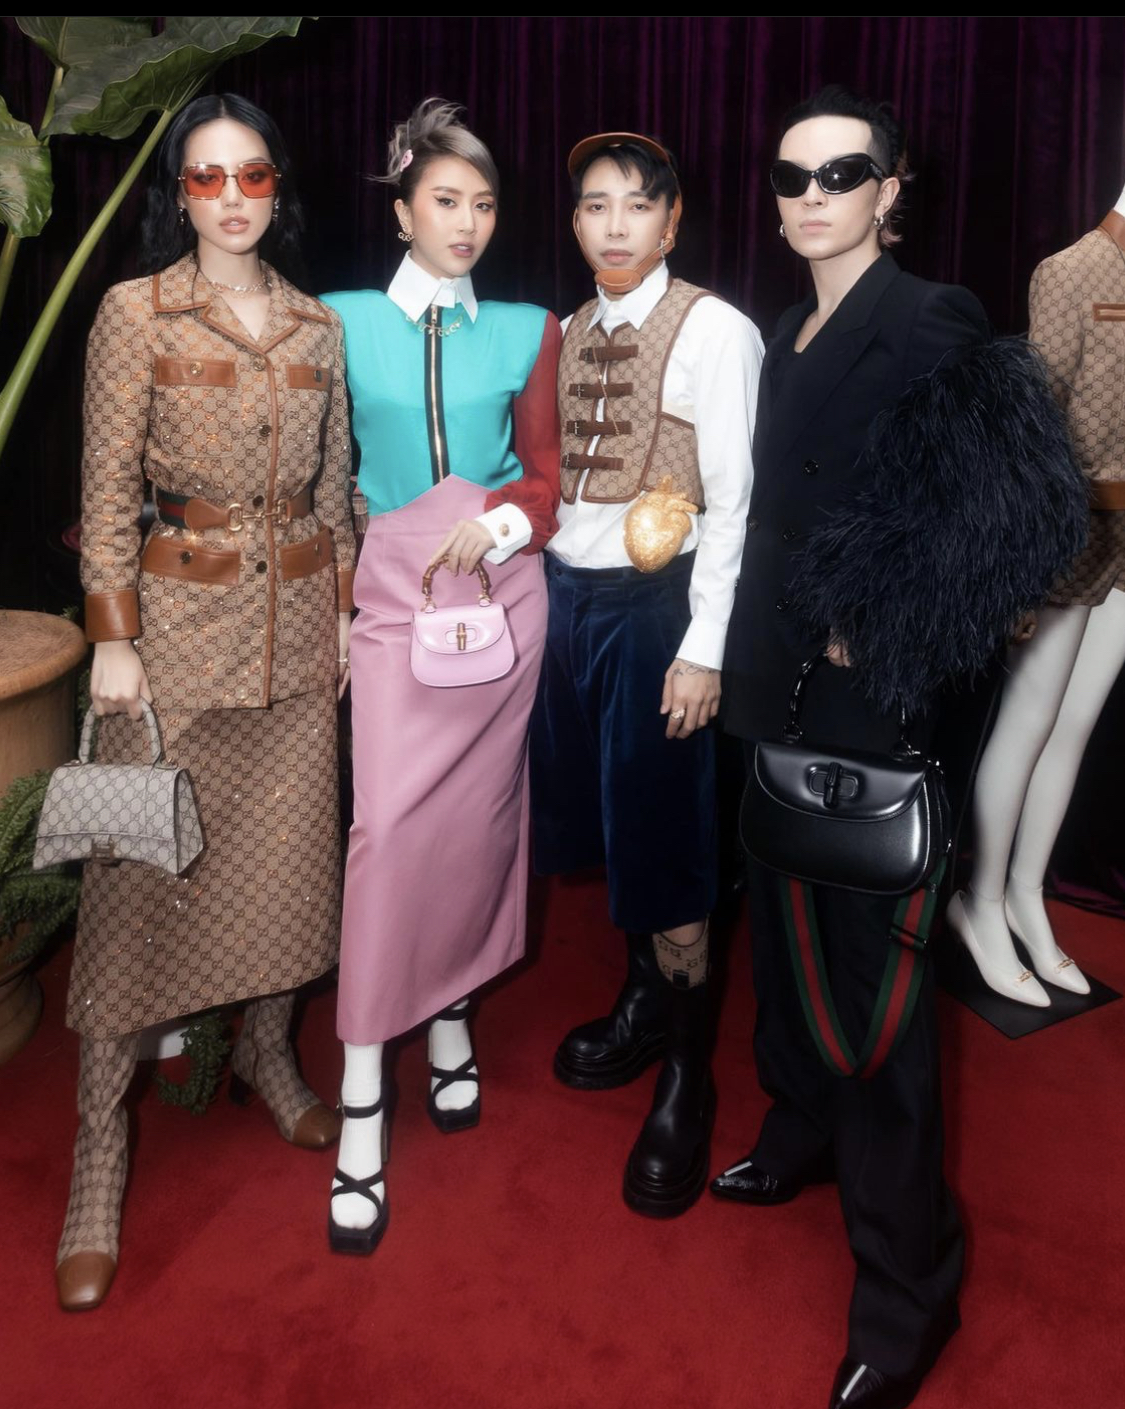 Các tên tuổi nổi tiếng trong làng thời trang Việt cùng quy tụ trong một khung hình. Từ trái sang phải là Khánh Linh, Quỳnh Anh Shyn, Hoàng Ku, Kelbin Lei.